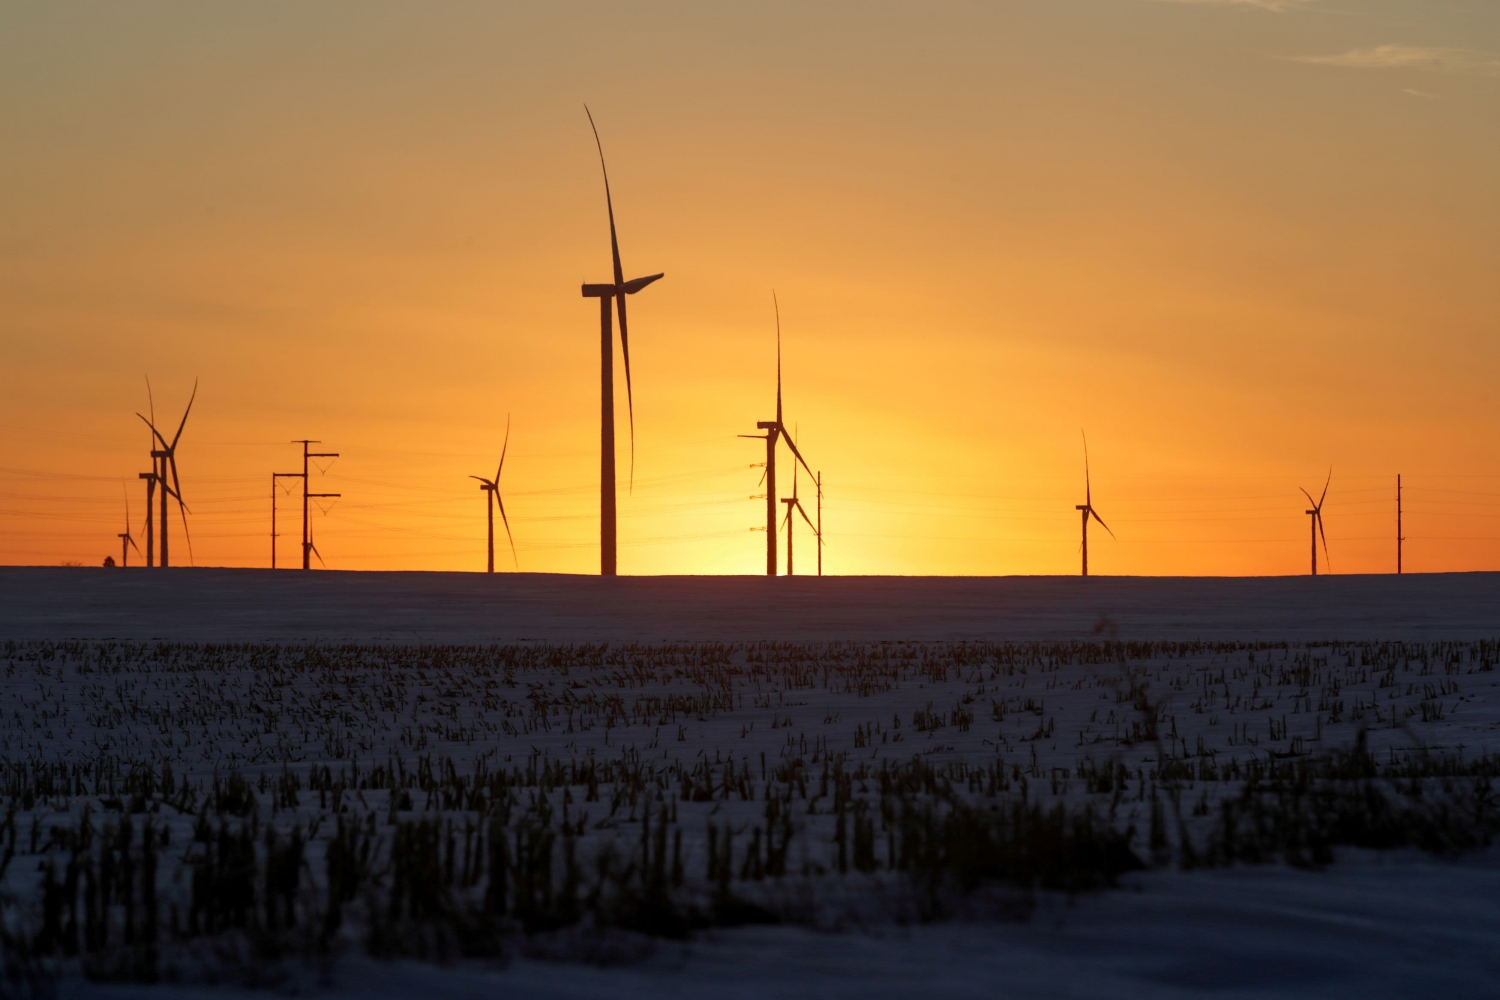 Hoa Kỳ bổ sung điện gió nhiều nhất so với các nguồn khác